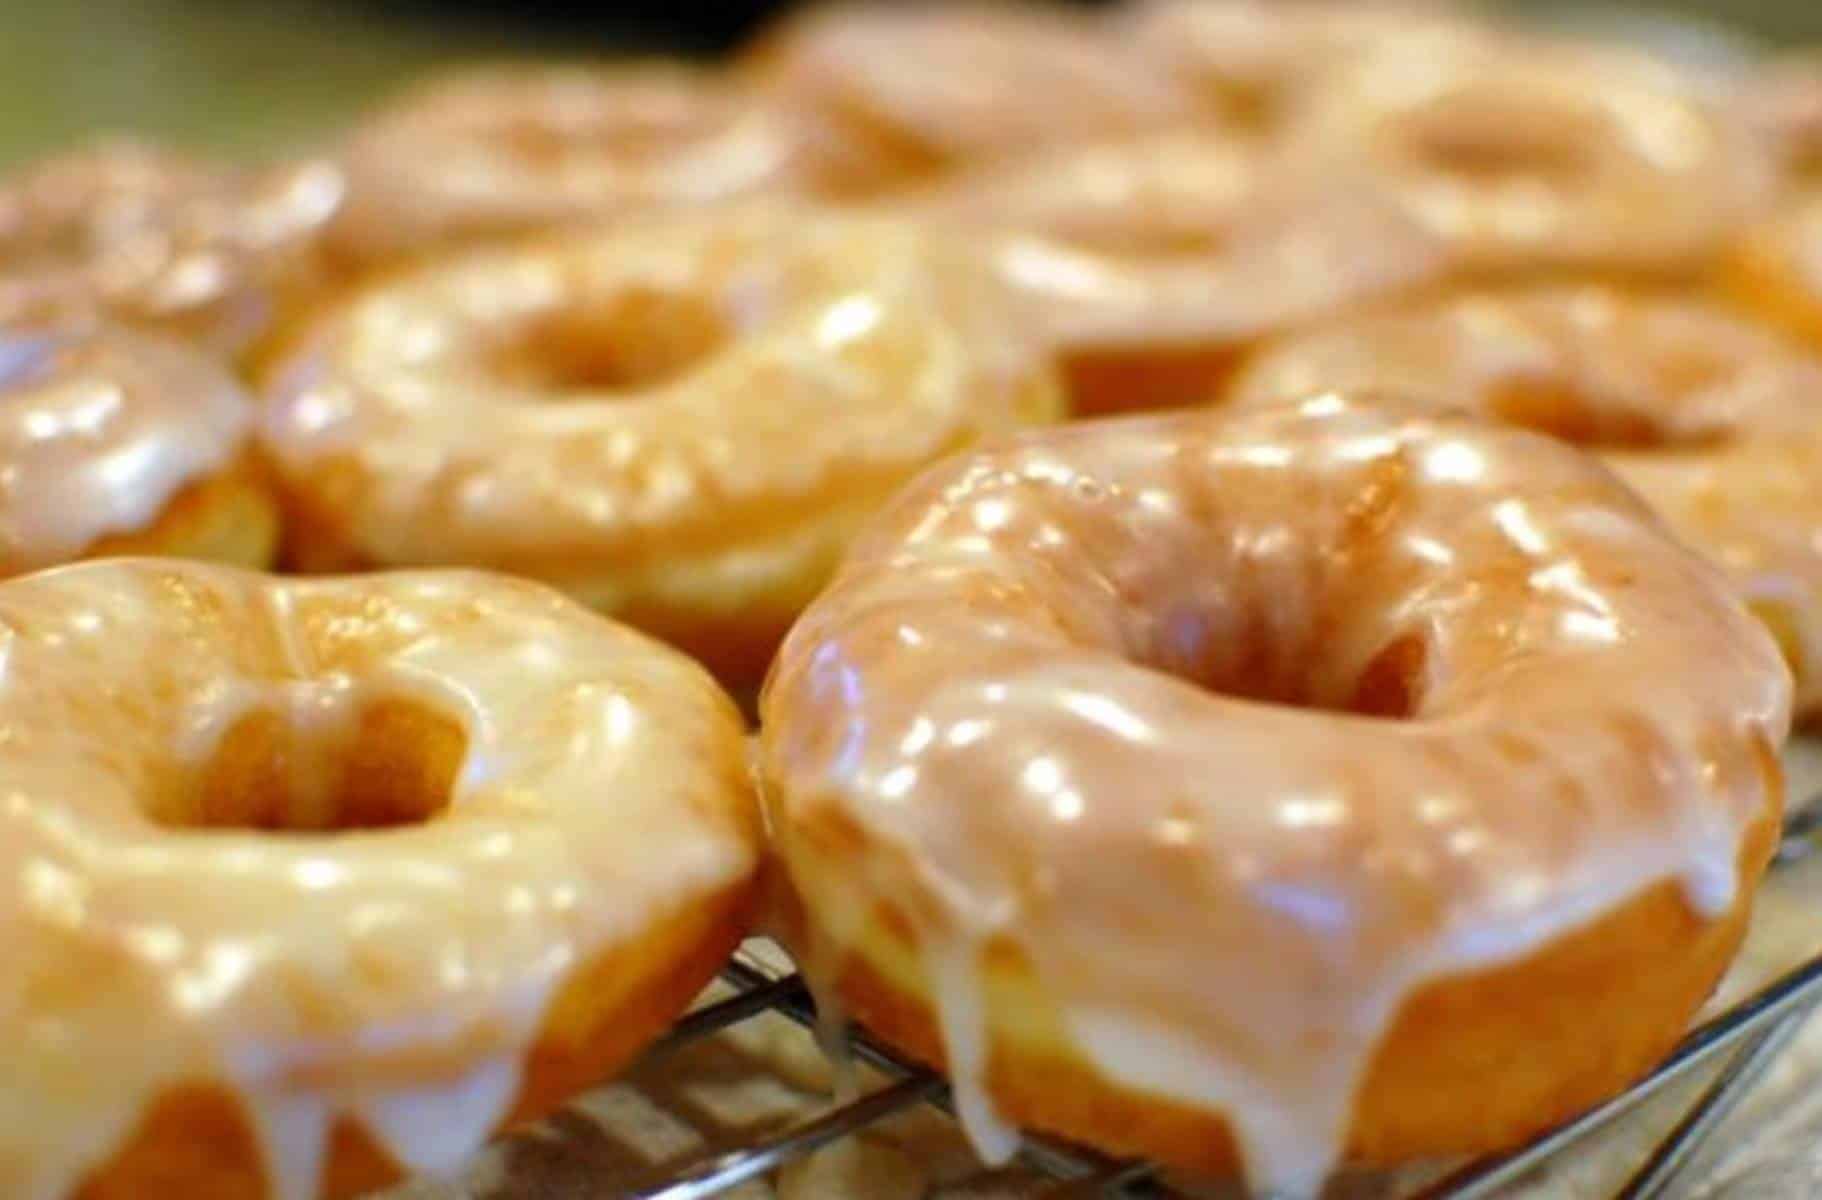 Veja como preparar deliciosos donuts caseiros em poucos passos